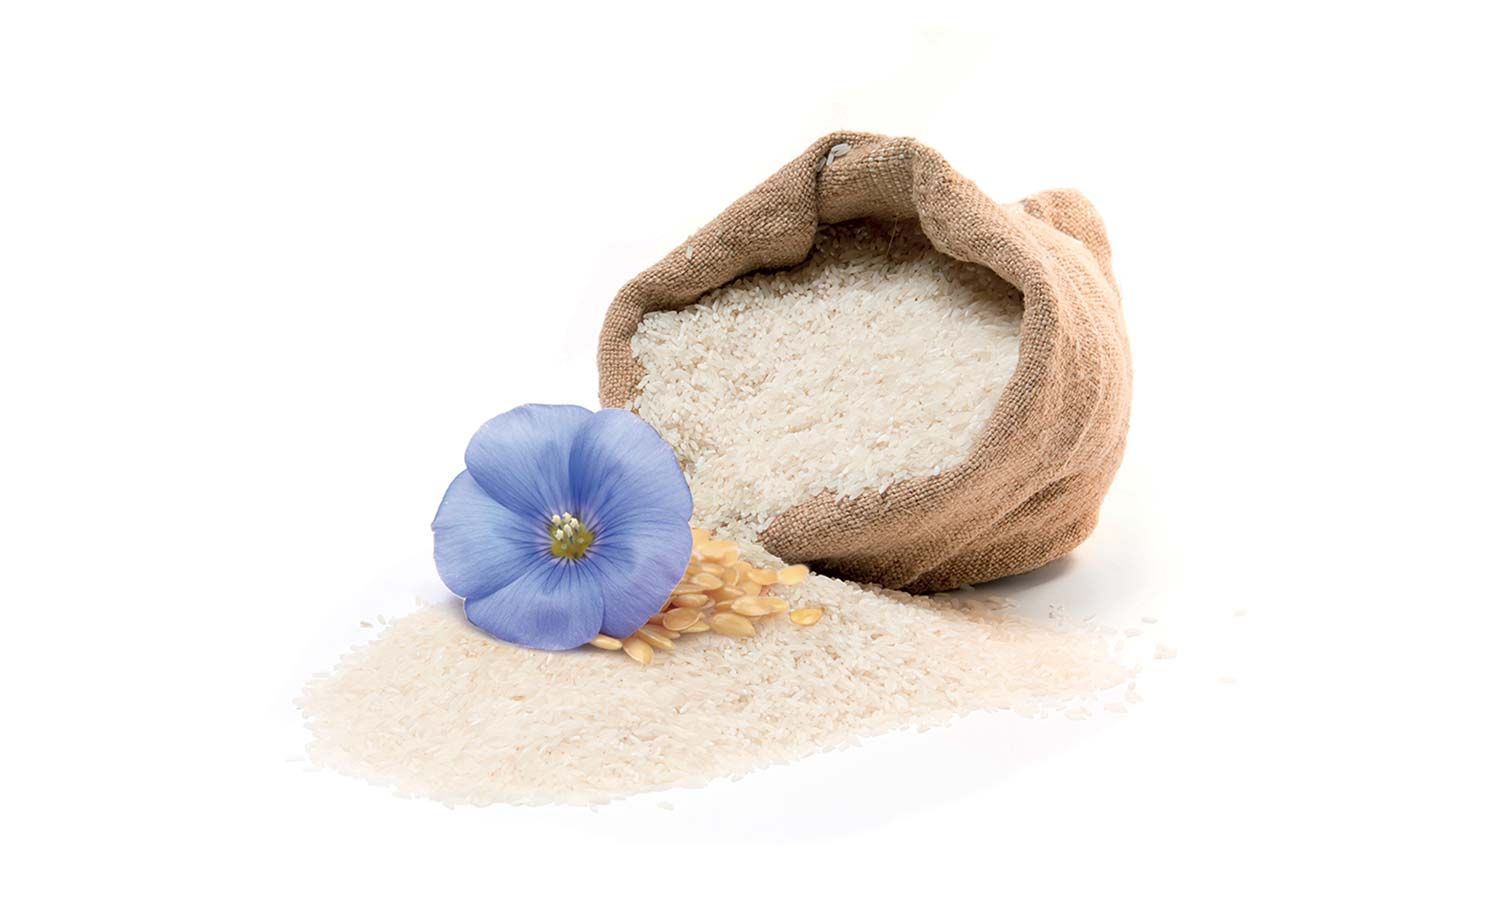 Sacchetto di riso bianco con fiore azzurro usato nel packaging design di prodotti cosmetici naturali realizzato da WillBe